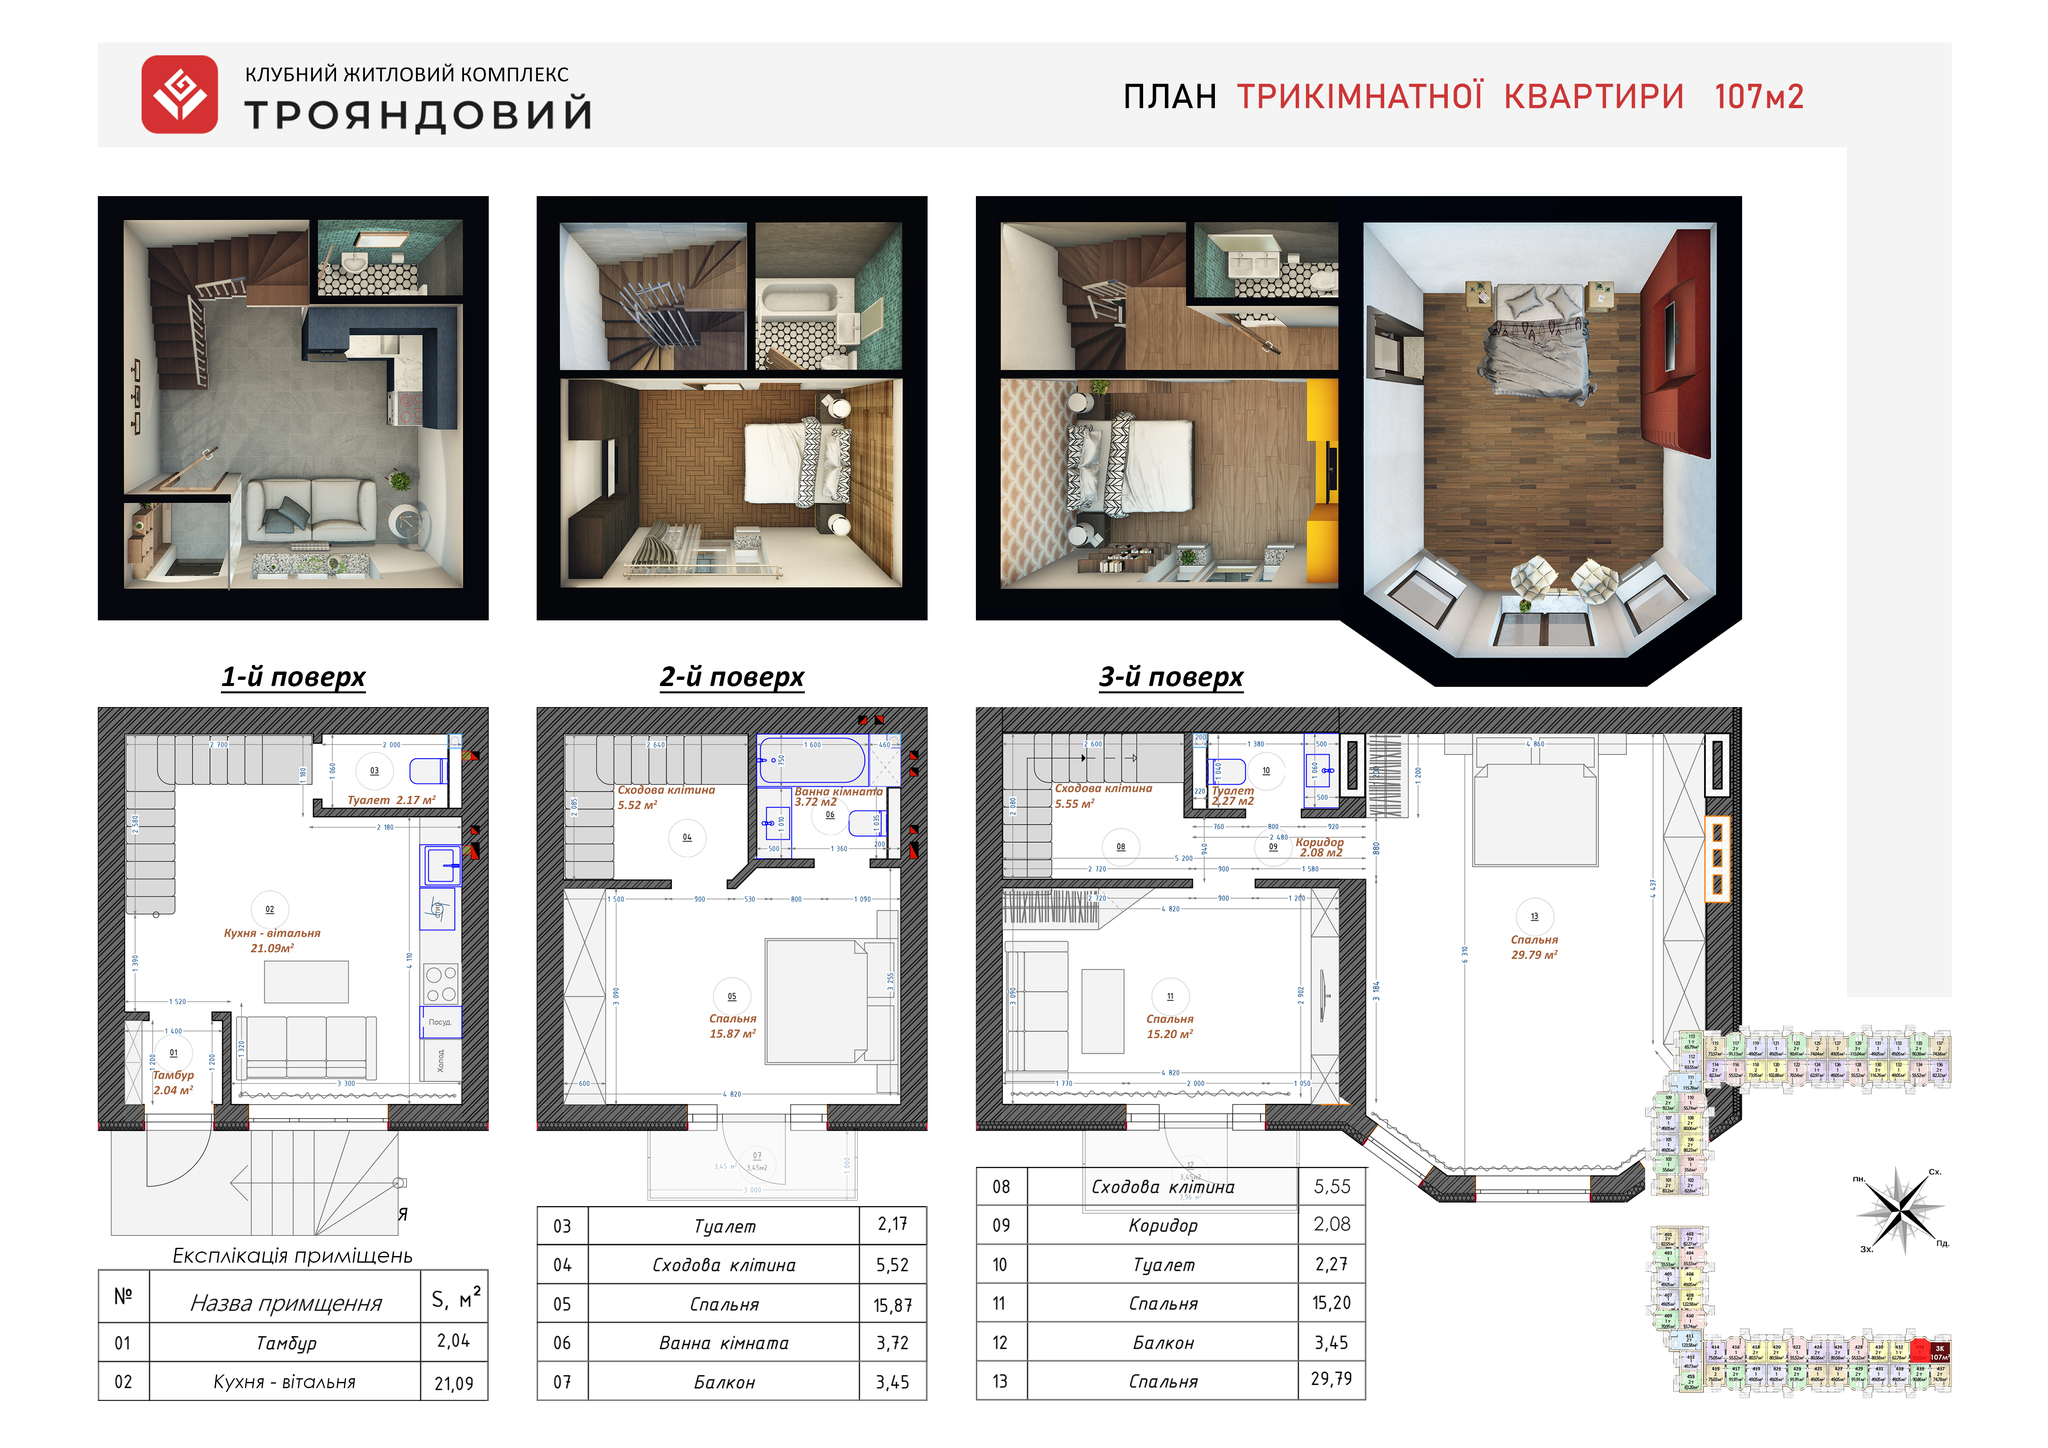 3-комнатная 107 м² в ЖК Трояндовый от 28 000 грн/м², г. Бровары